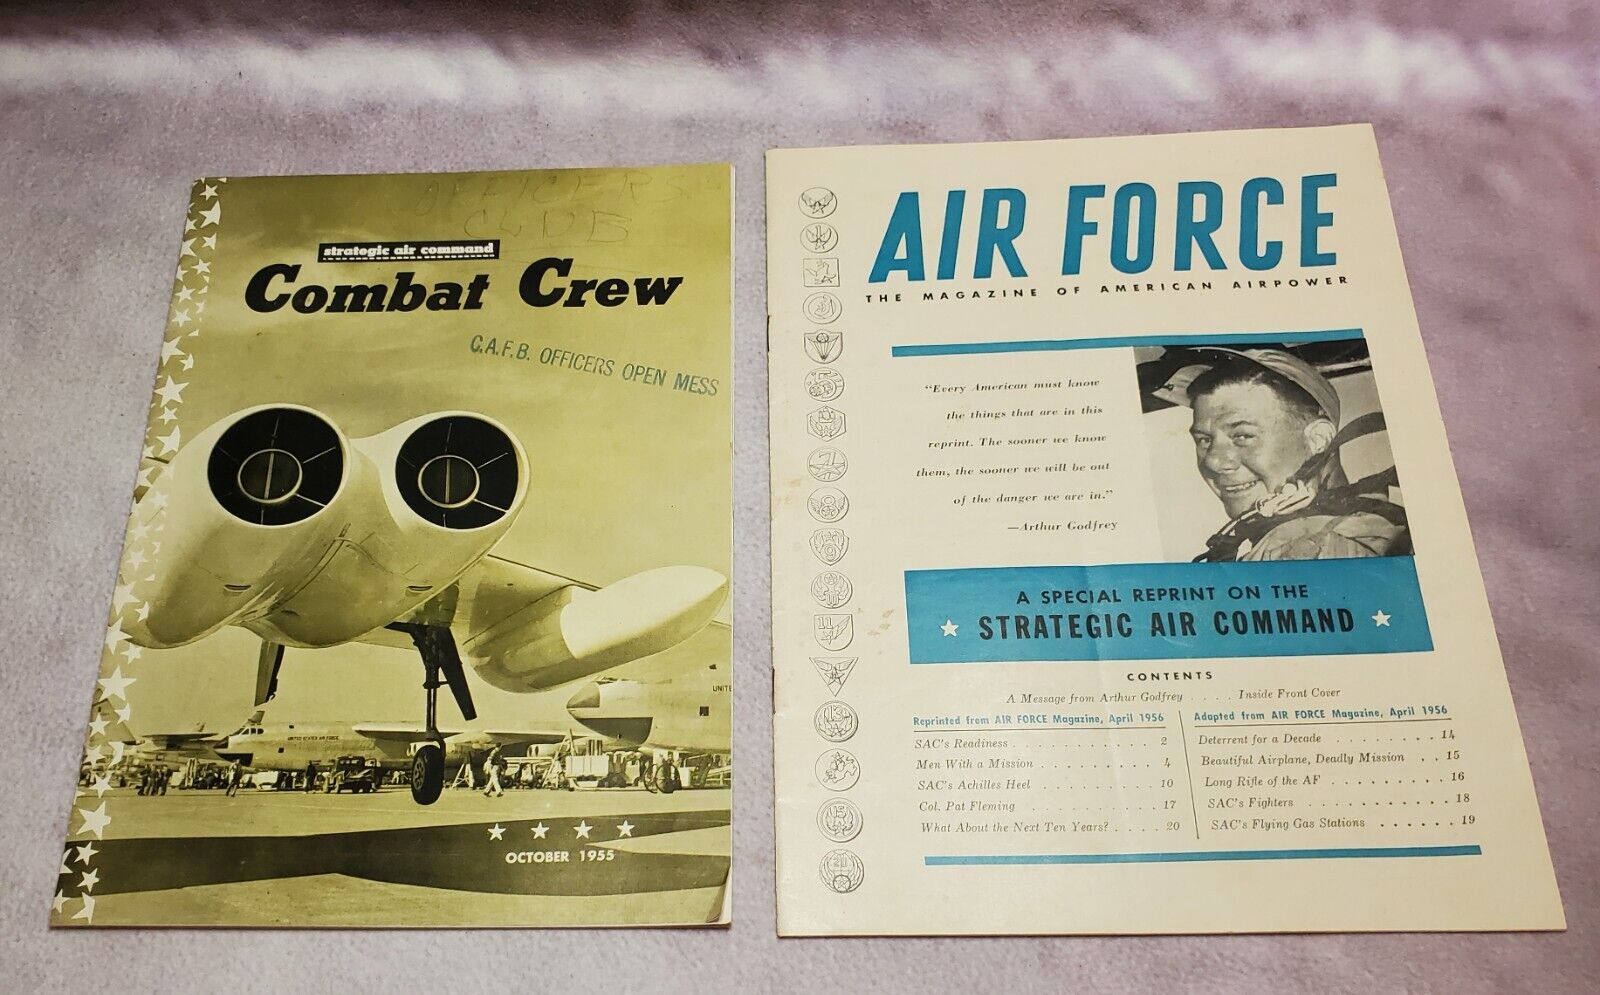 COMBAT CREW - STRATEGIC AIR COMMAND MAGAZINE - OCTOBER 1955 - WITH BONUS